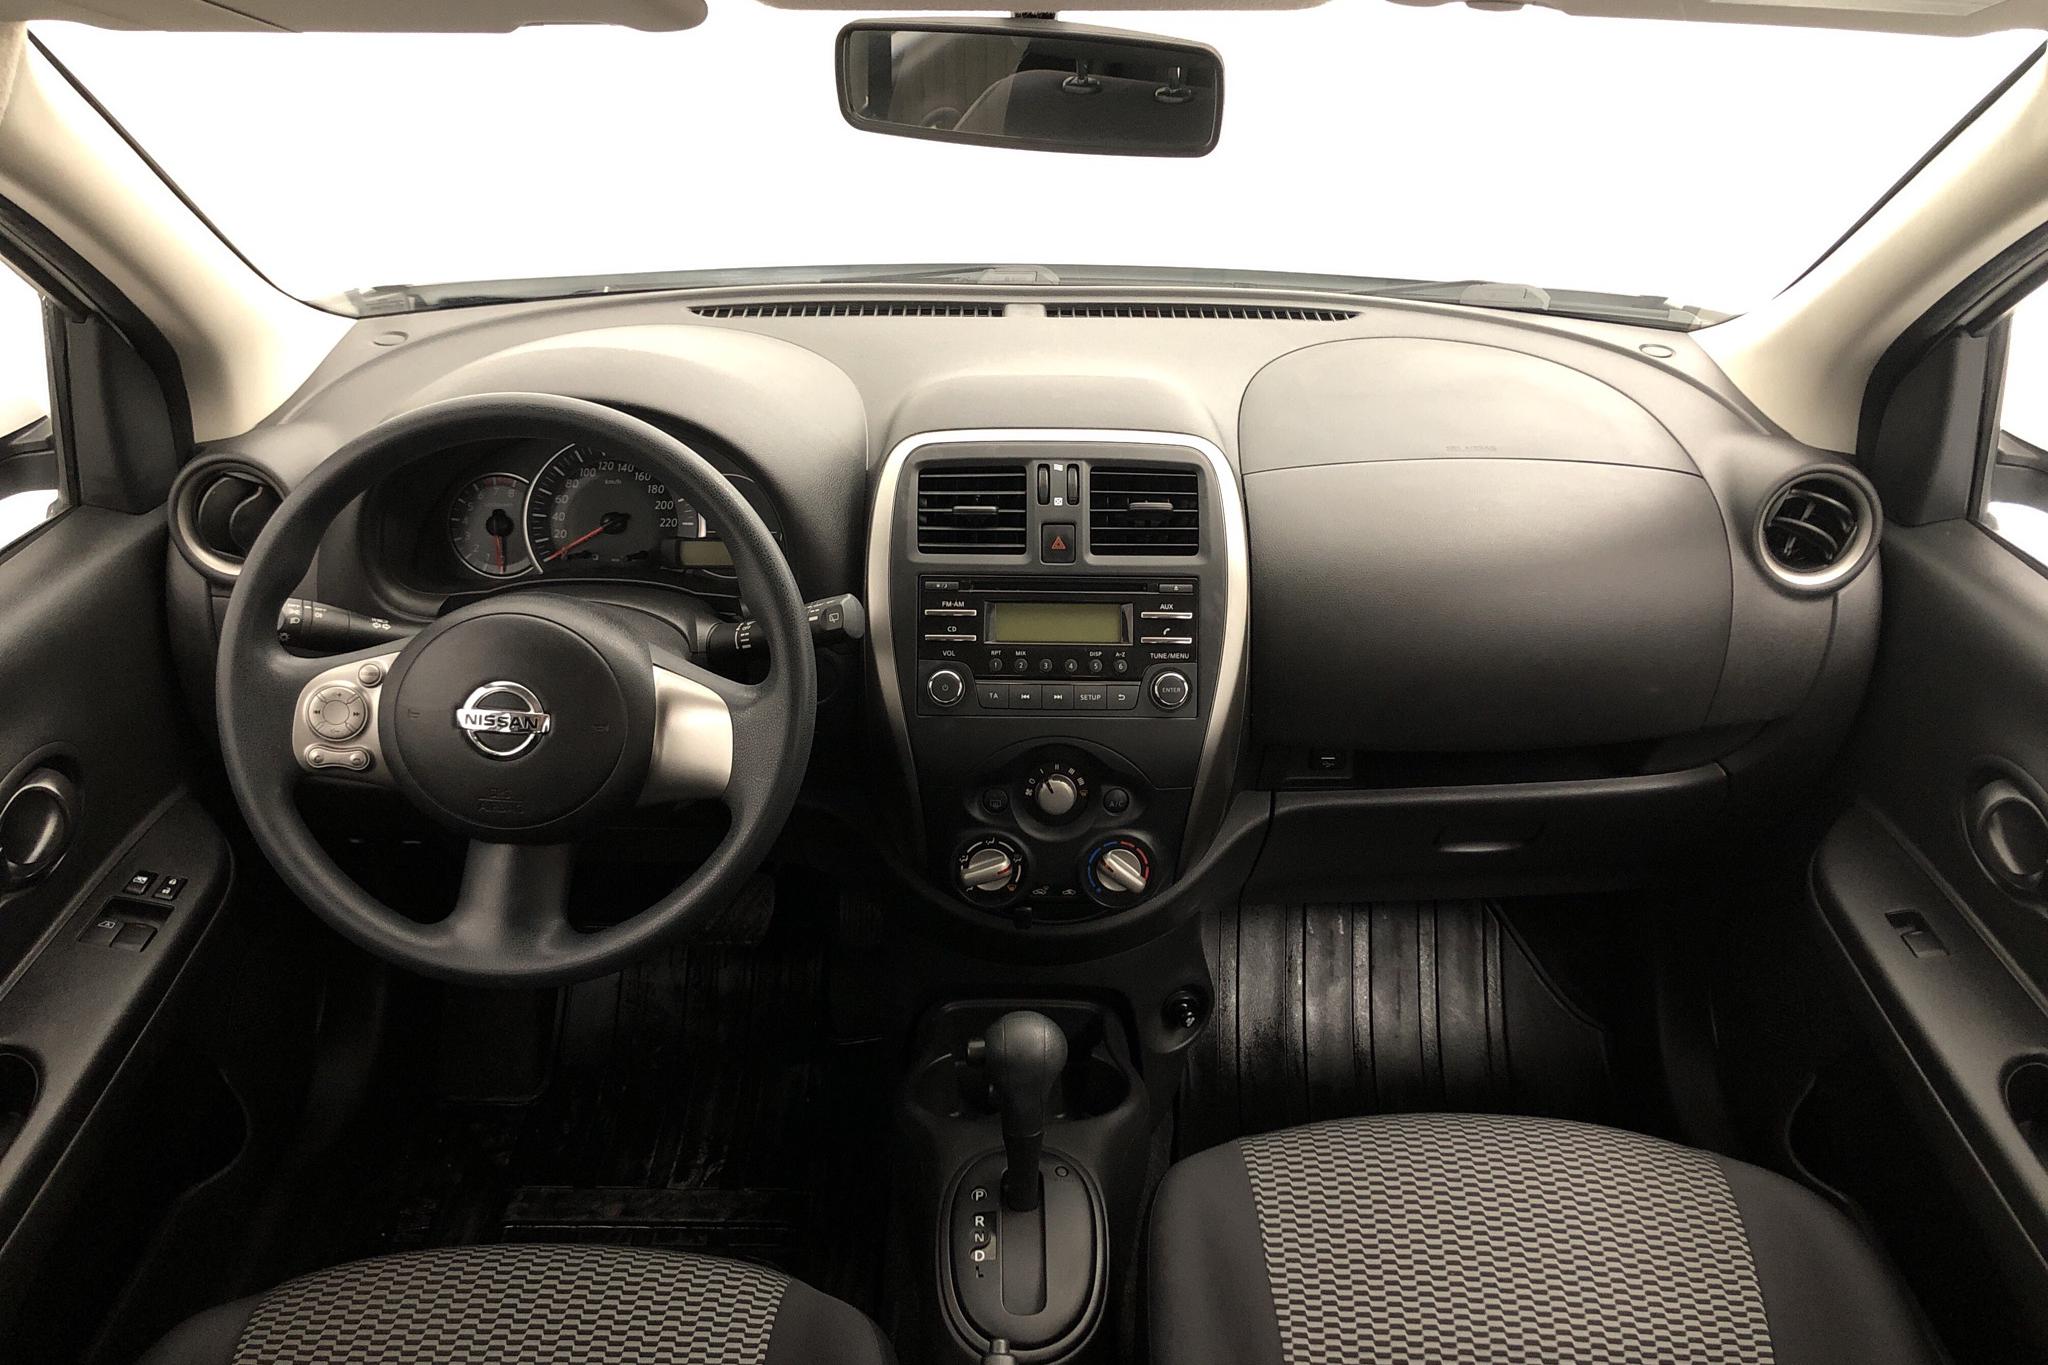 Nissan Micra 1.2 5dr (80hk) - 4 738 mil - Automat - vit - 2016